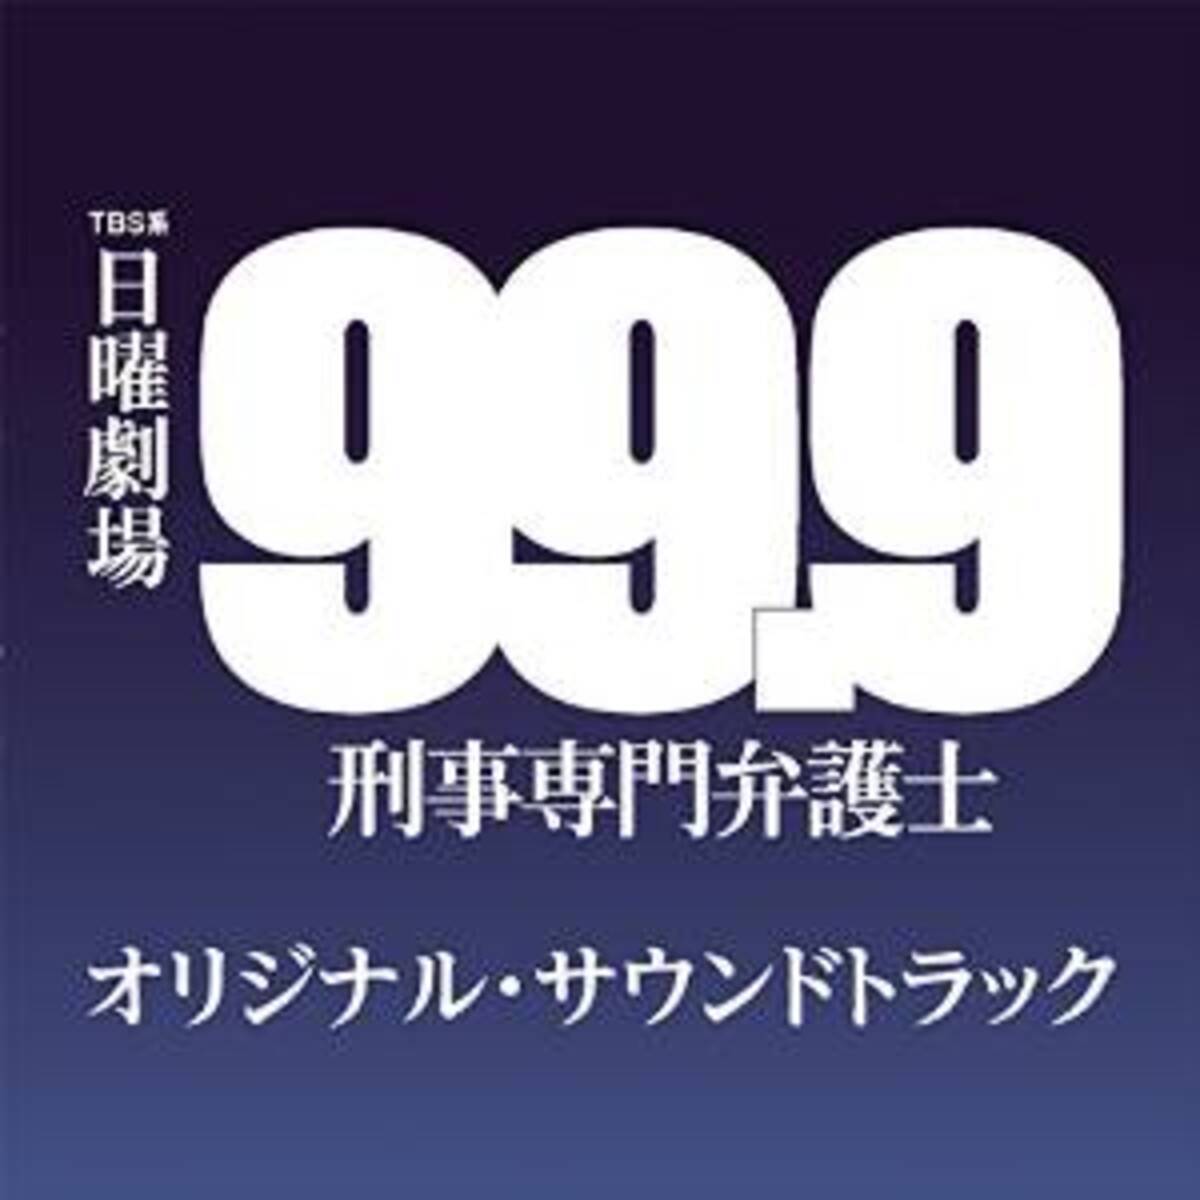 松本潤と香川照之 緊迫の0 1 99 9 刑事専門弁護士 6話 エキサイトニュース